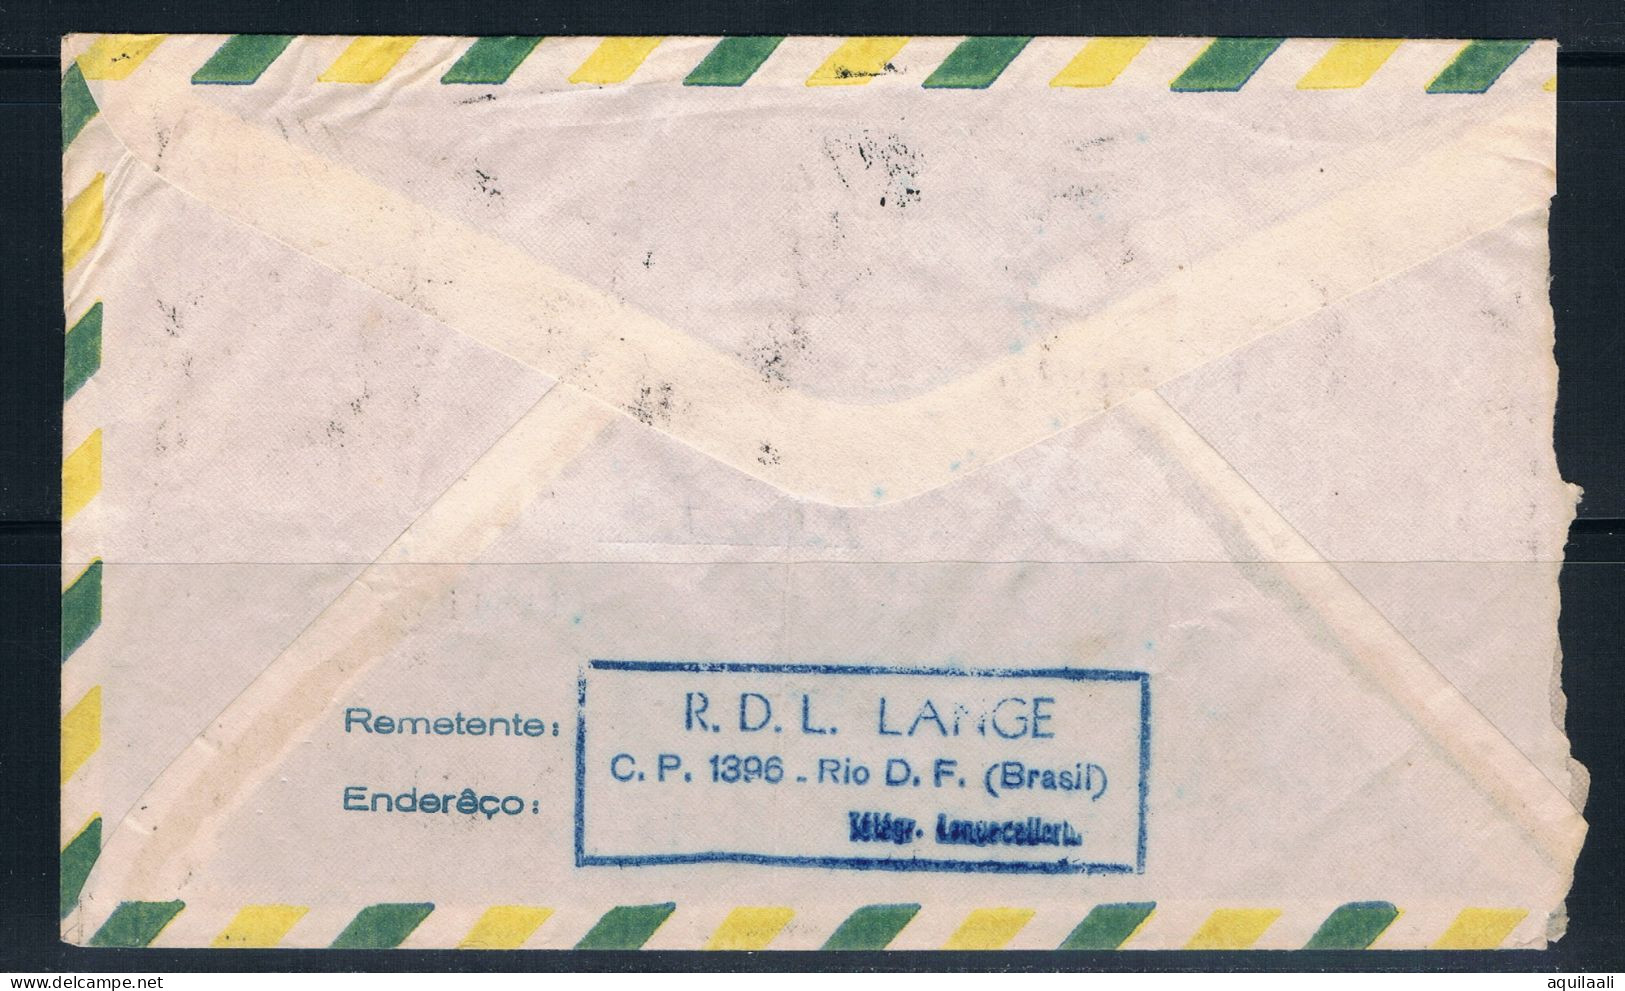 Storia Postale Brasile1966. Lettera Per Aosta, Italia. - Brieven En Documenten